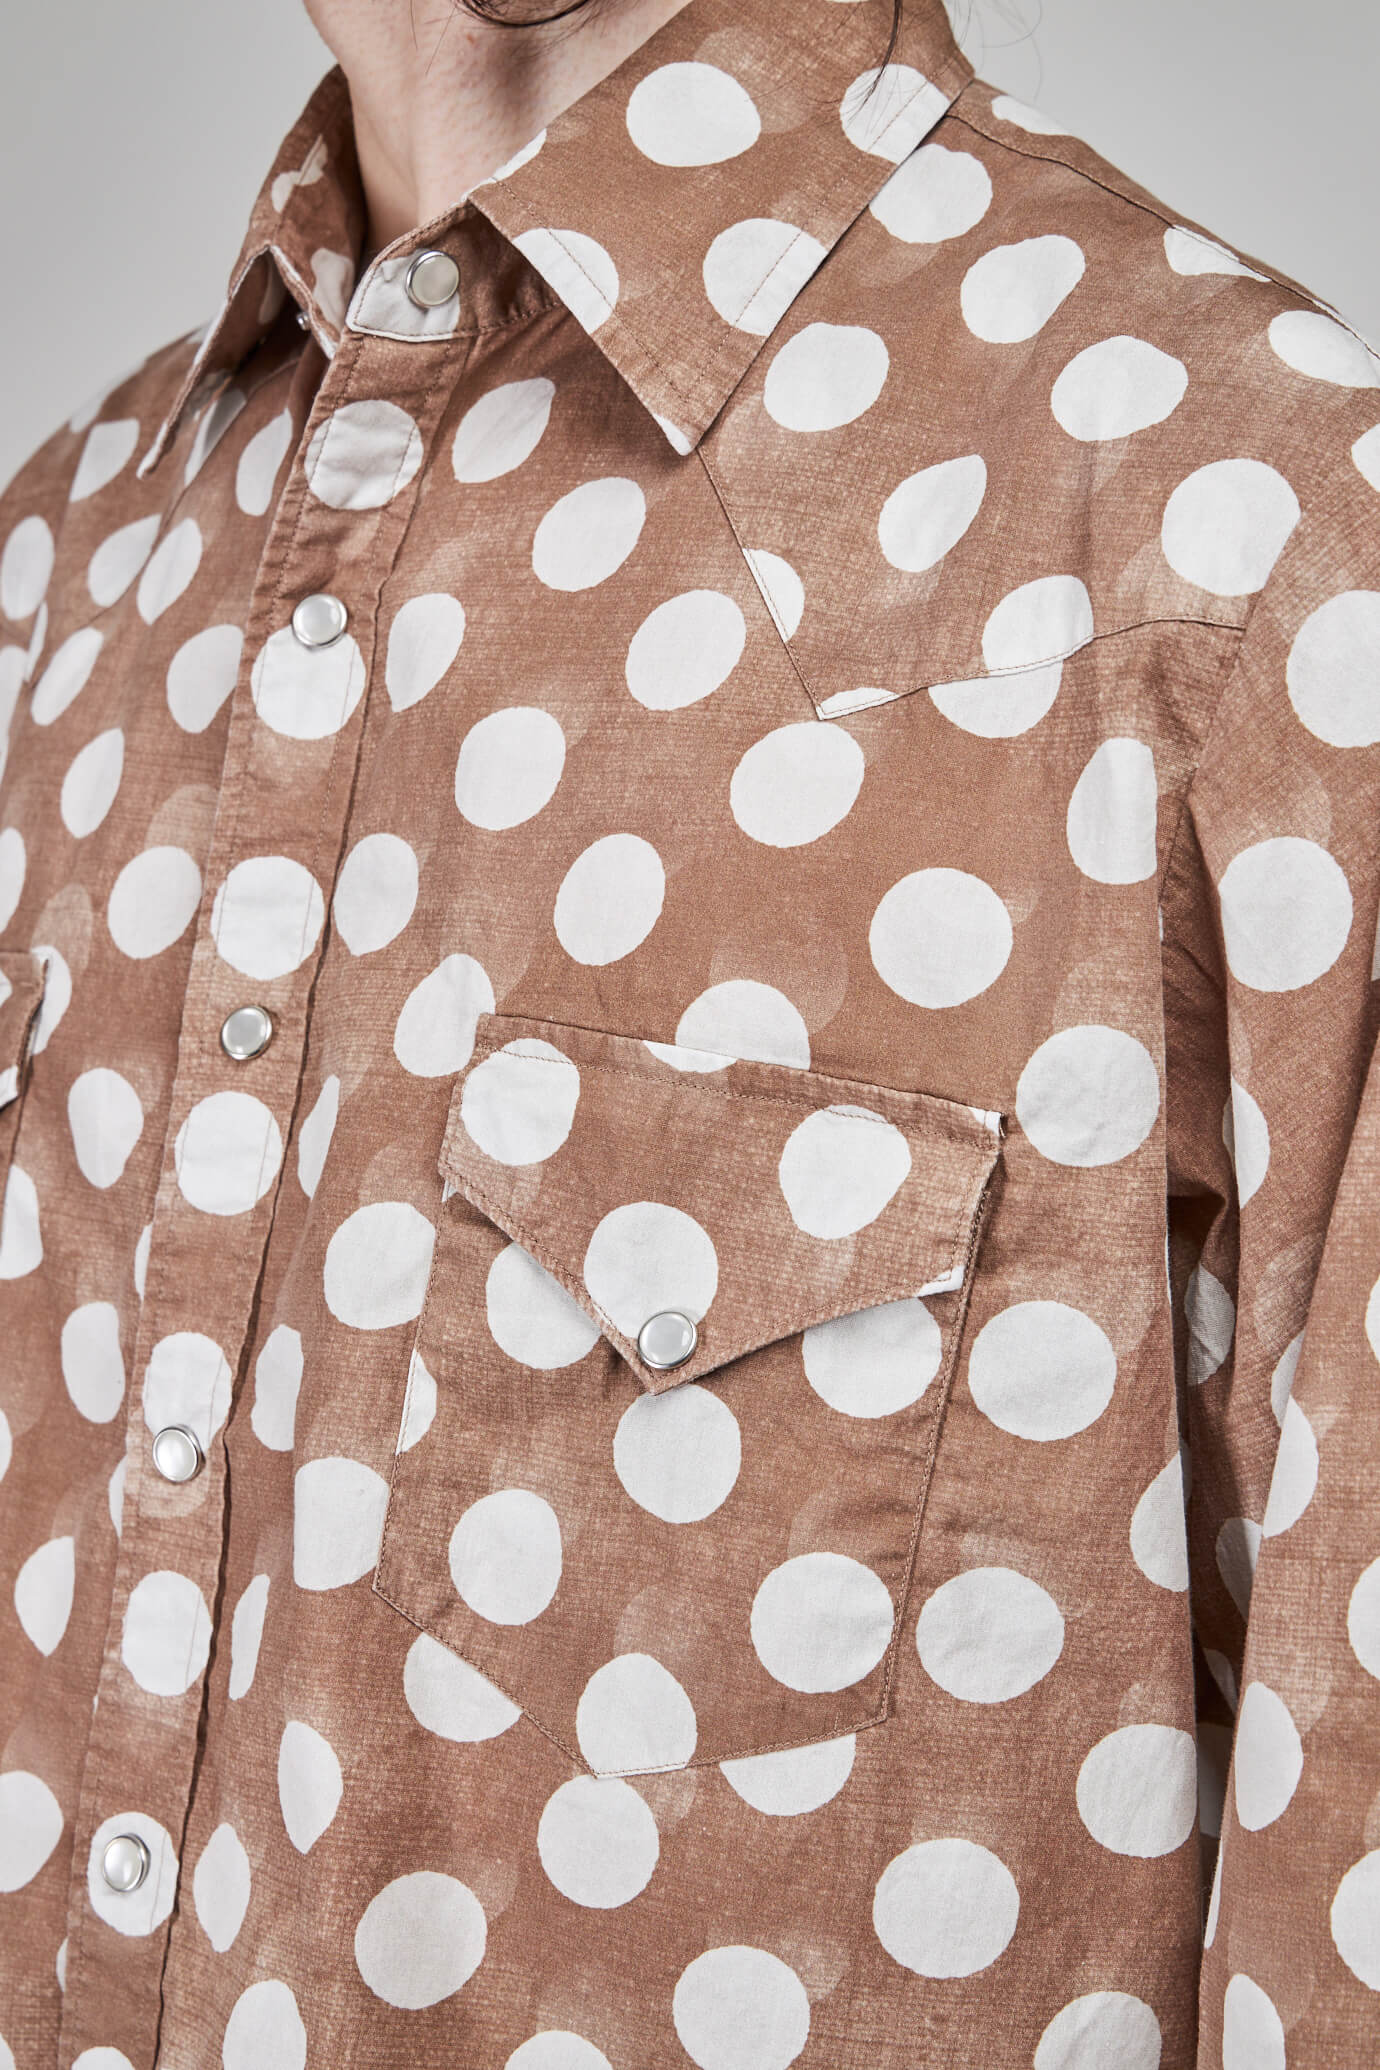 Printed Light Shirt Woven , brown polka dot